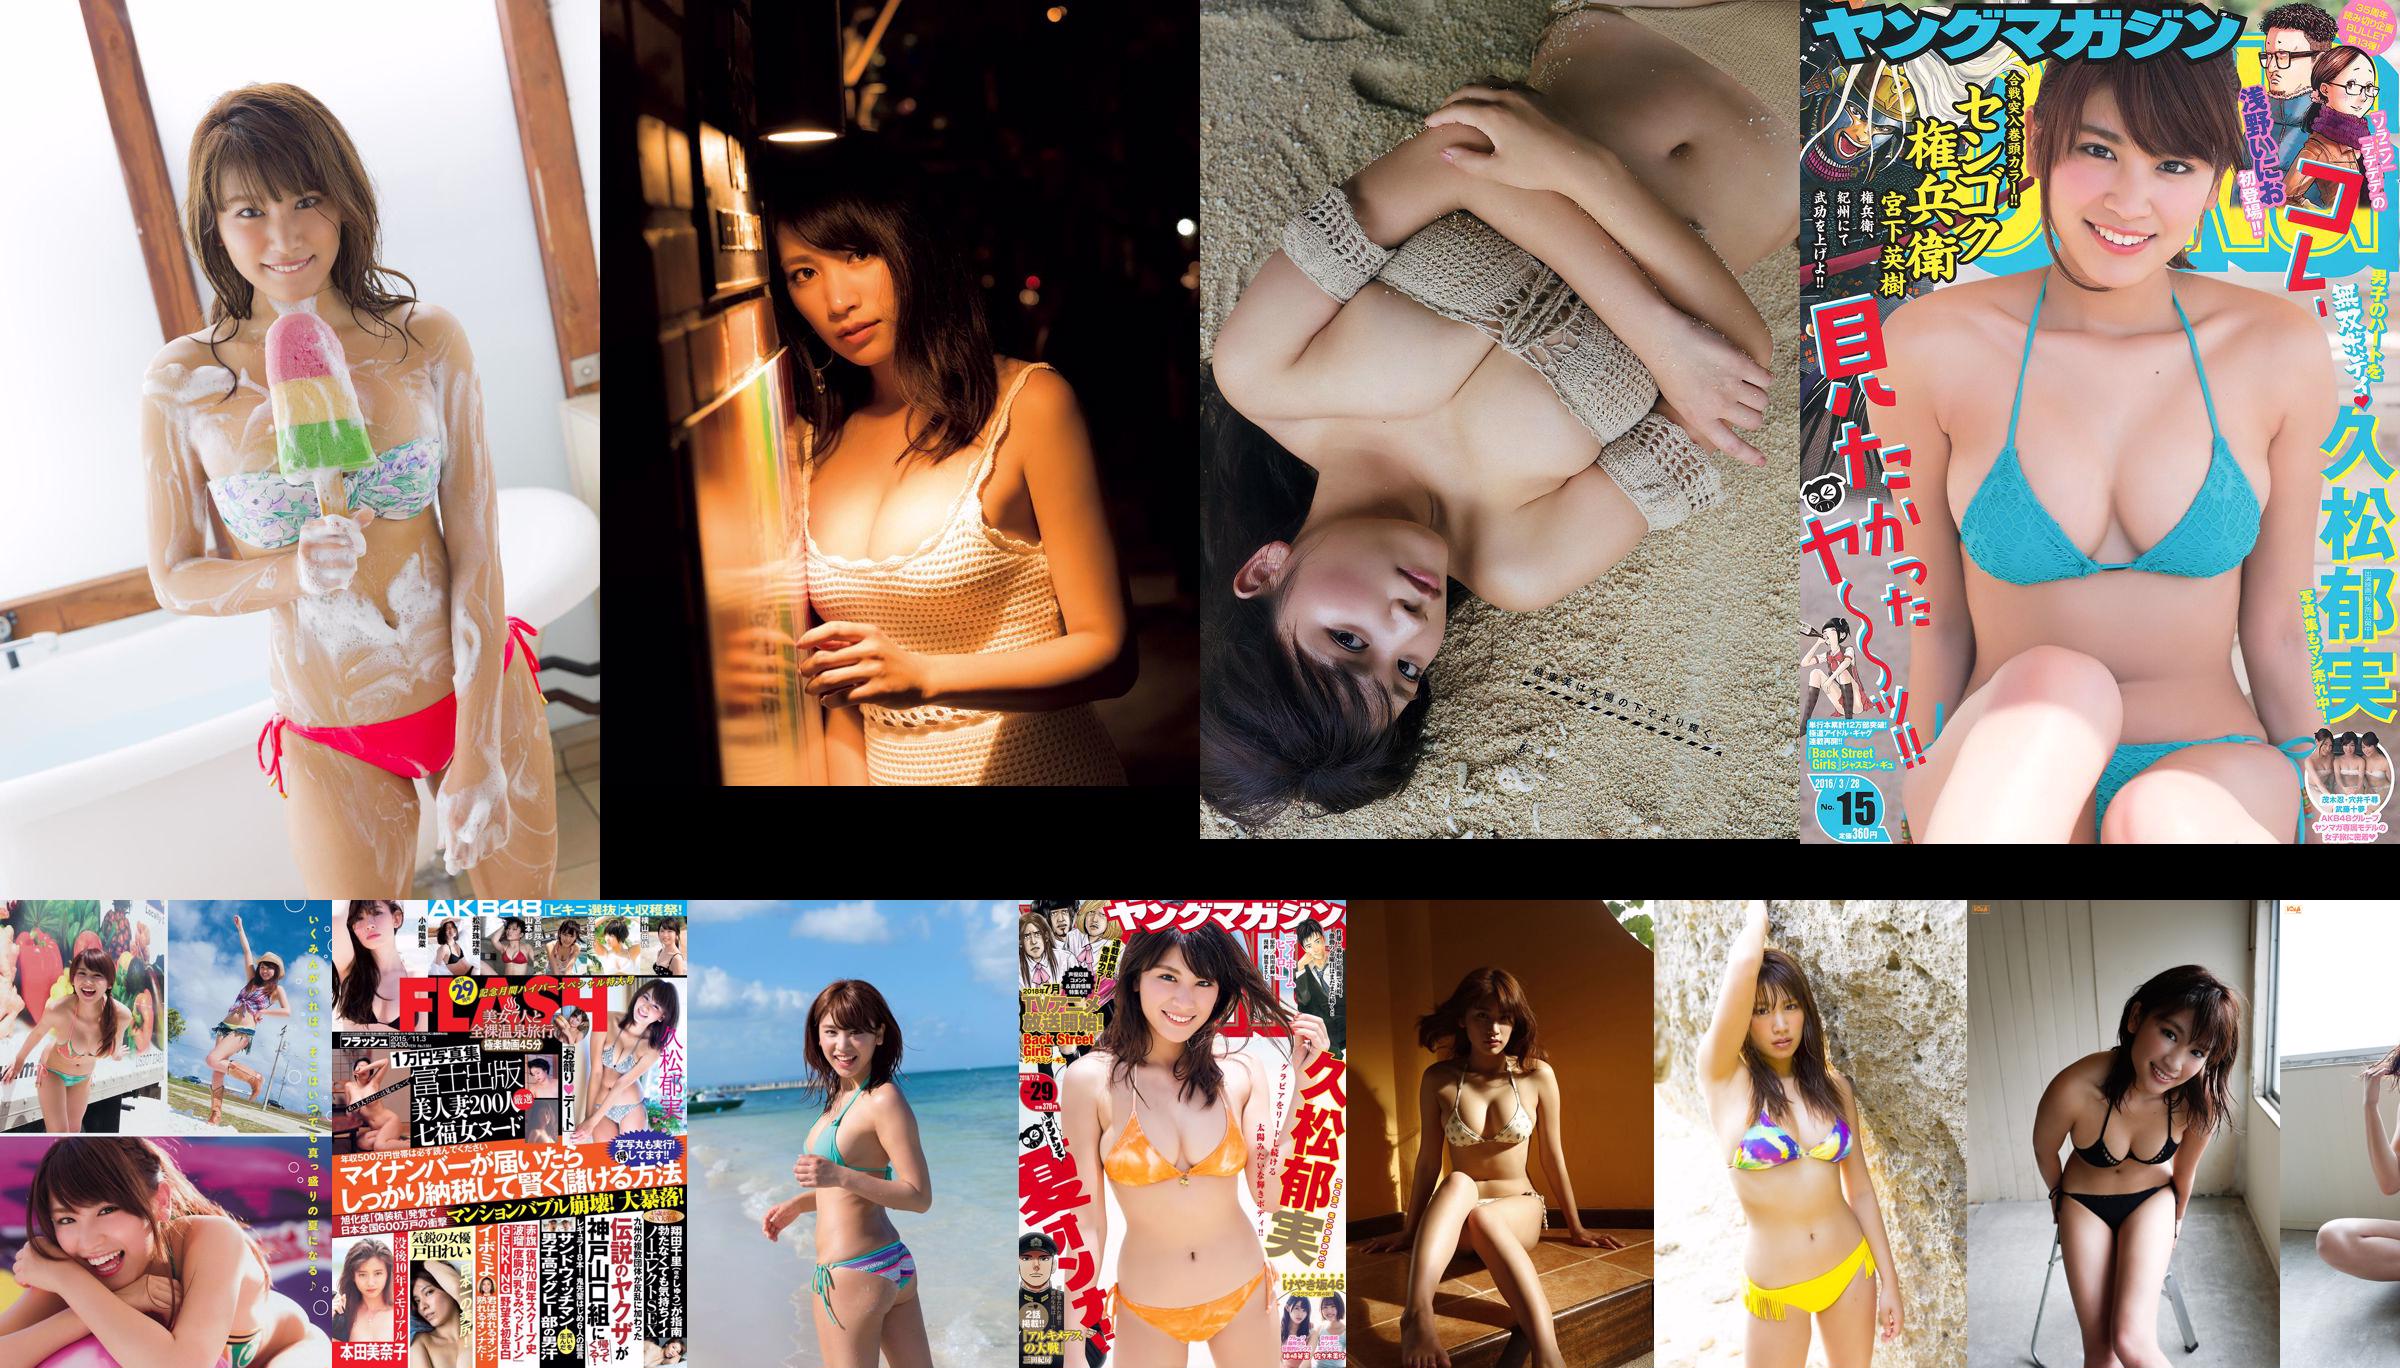 Hisamatsu Ikumi Aizawa Rina Uchida Rio Ando Sakura Yuka Takiuchi Komi Yoshida Satoshi [Playboy Mingguan] Majalah Foto No.29 2016 No.876ce5 Halaman 2